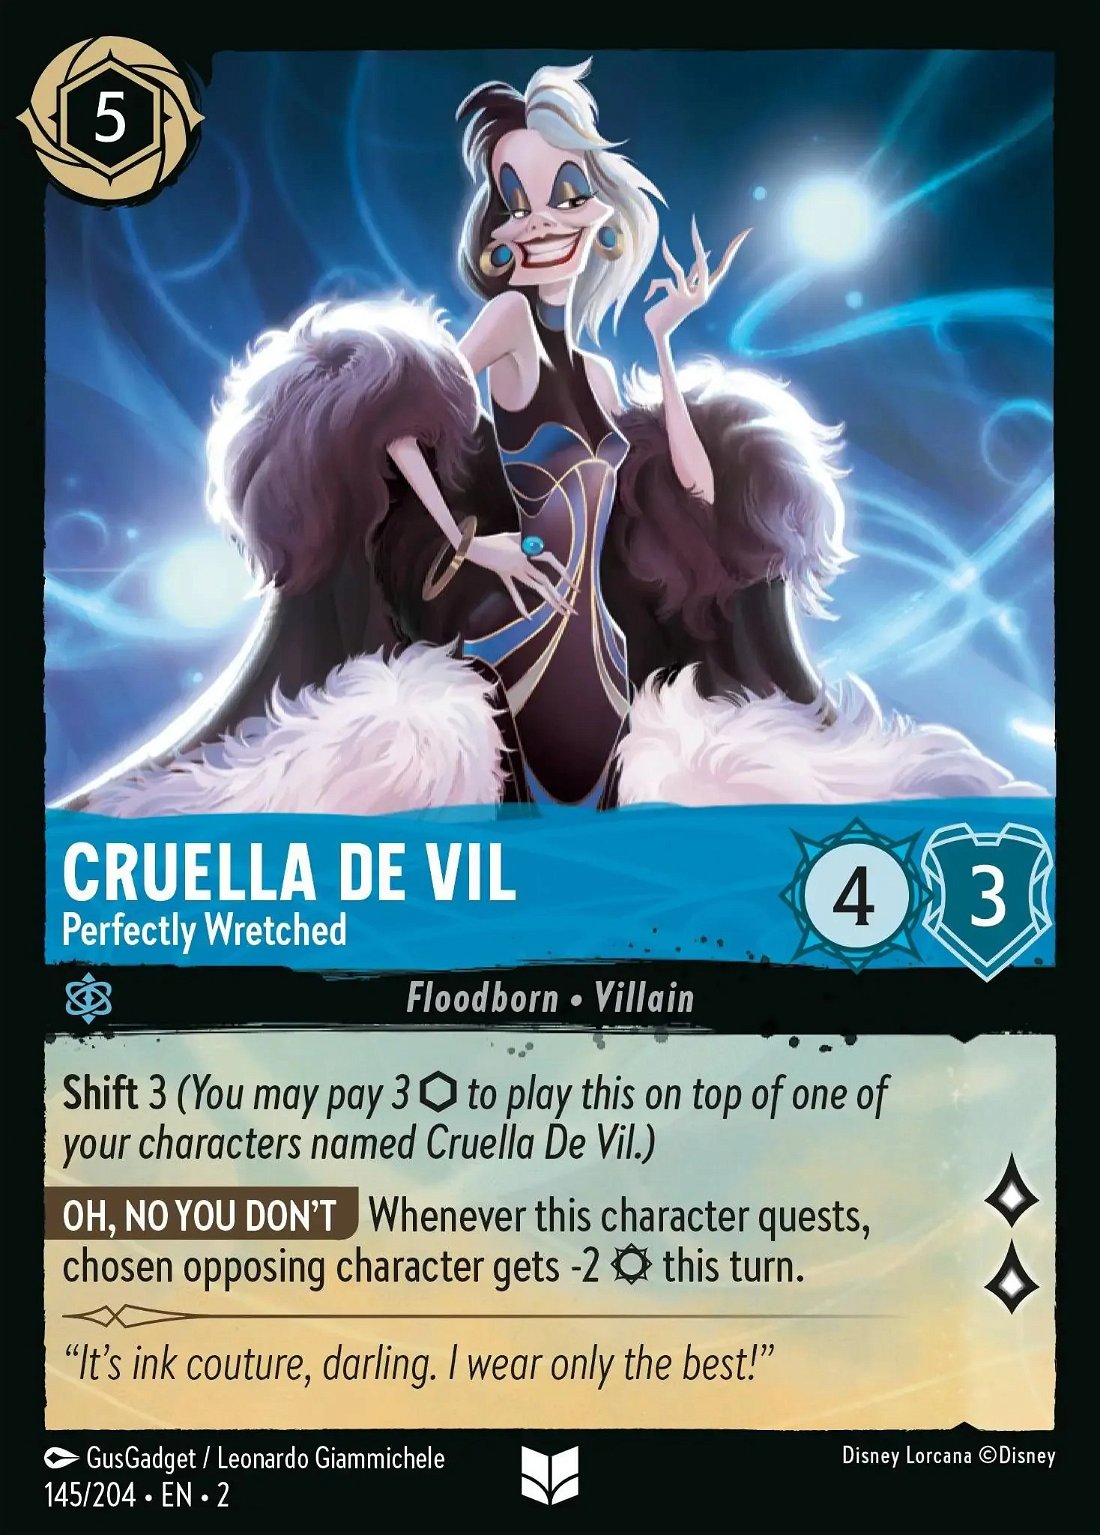 Cruella De Vil - Perfectly Wretched Crop image Wallpaper